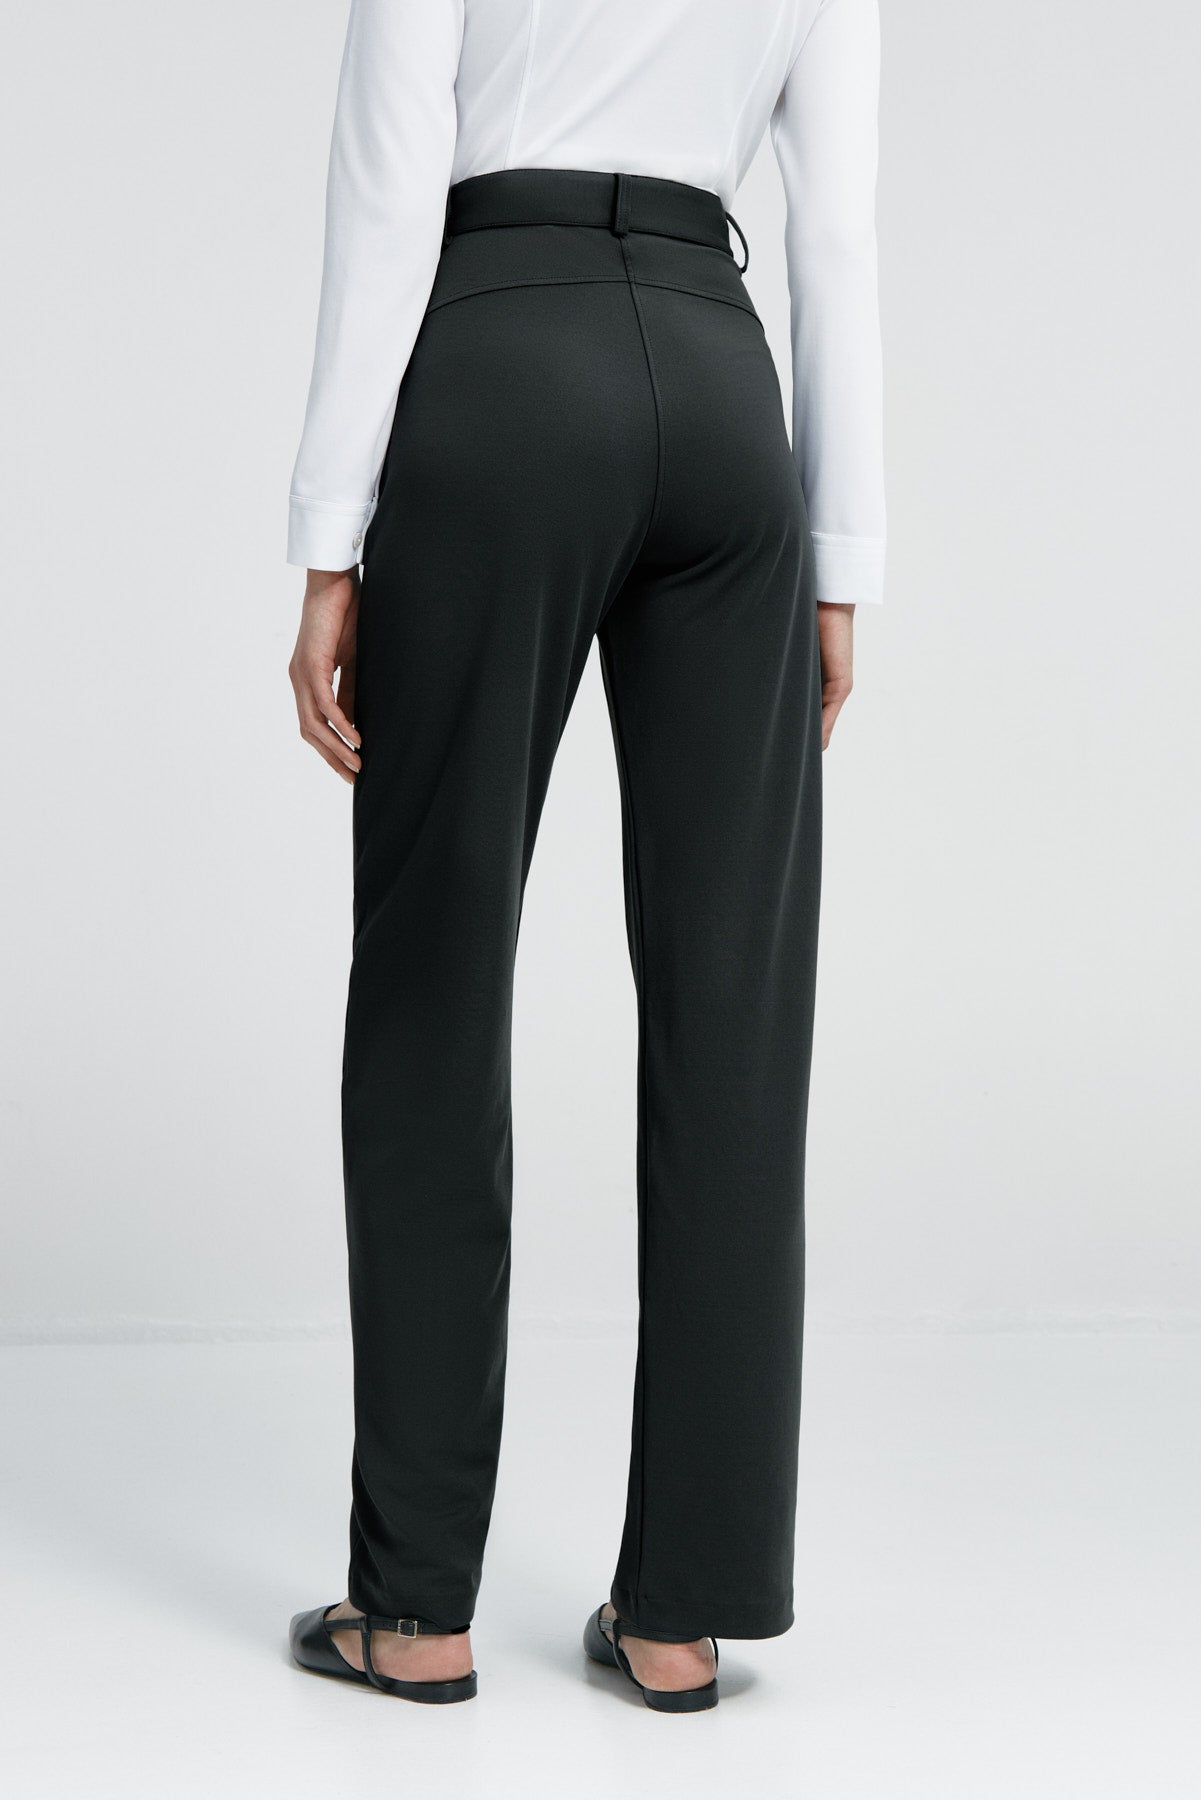 Pantalón de mujer negro de Sepiia, versátil y elegante, resistente a manchas y olores. Foto espalda